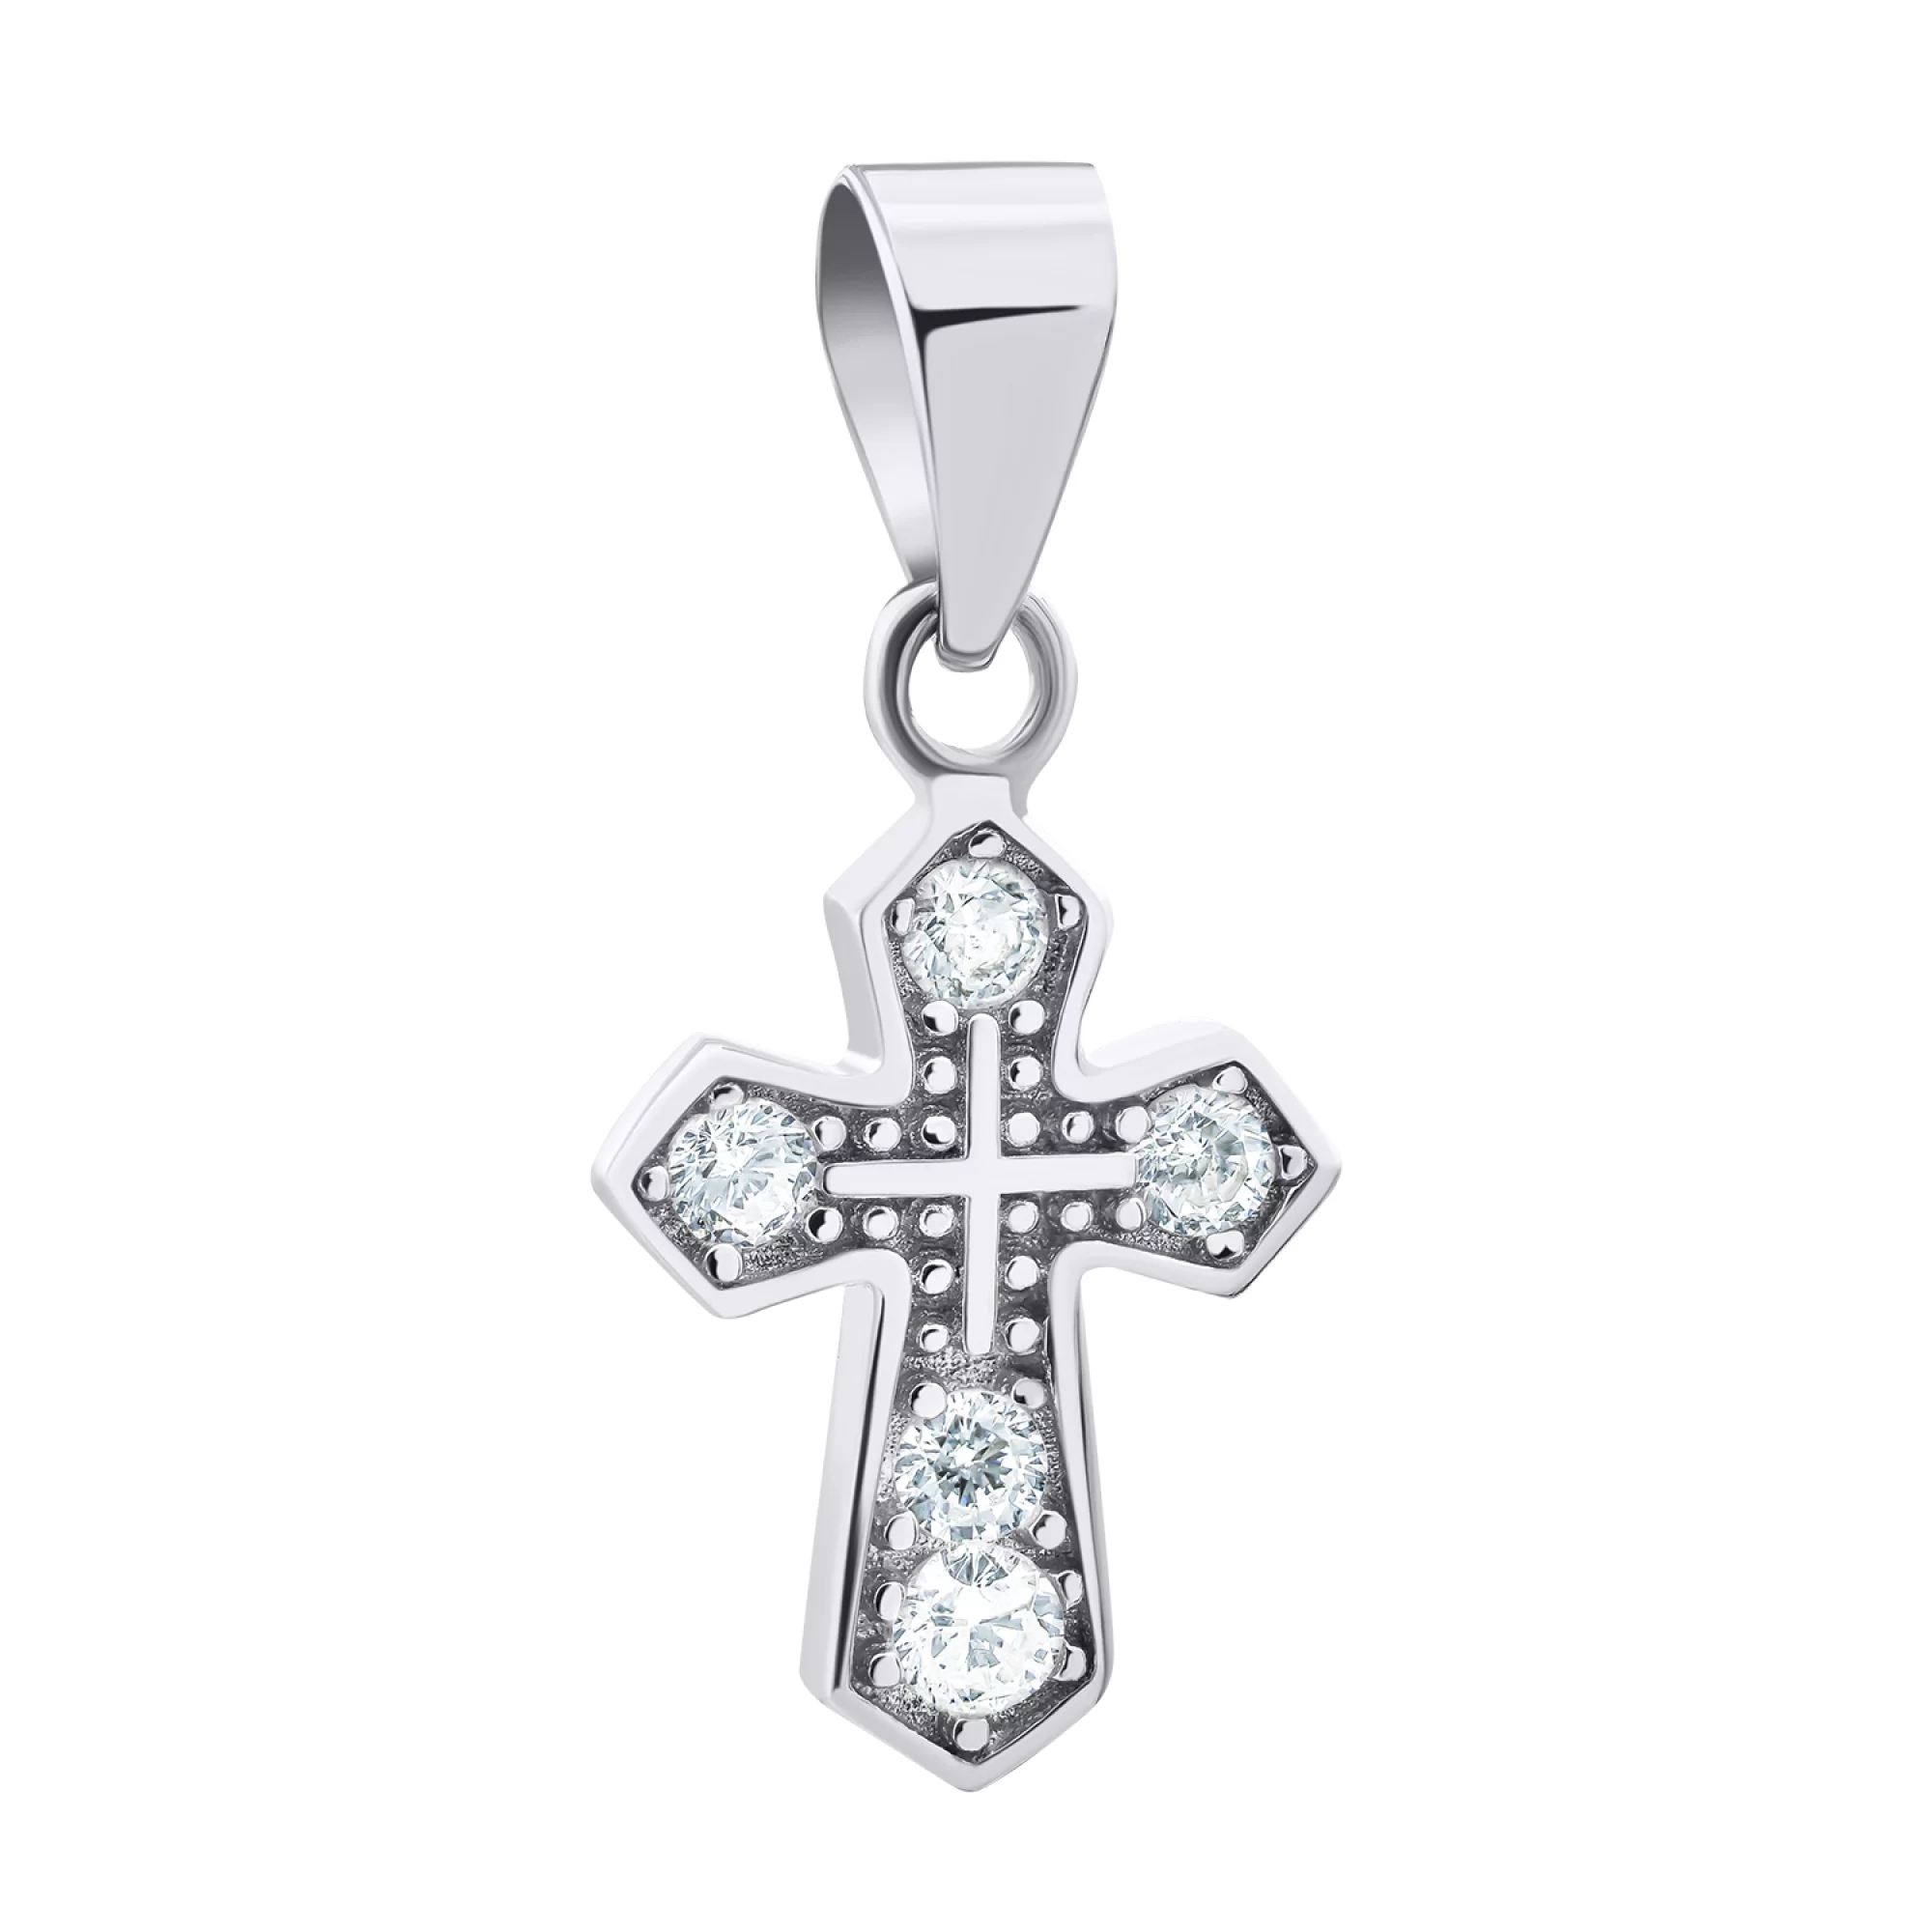 Декоративний хрестик зі срібла з фіанітами - 1521070 – зображення 1